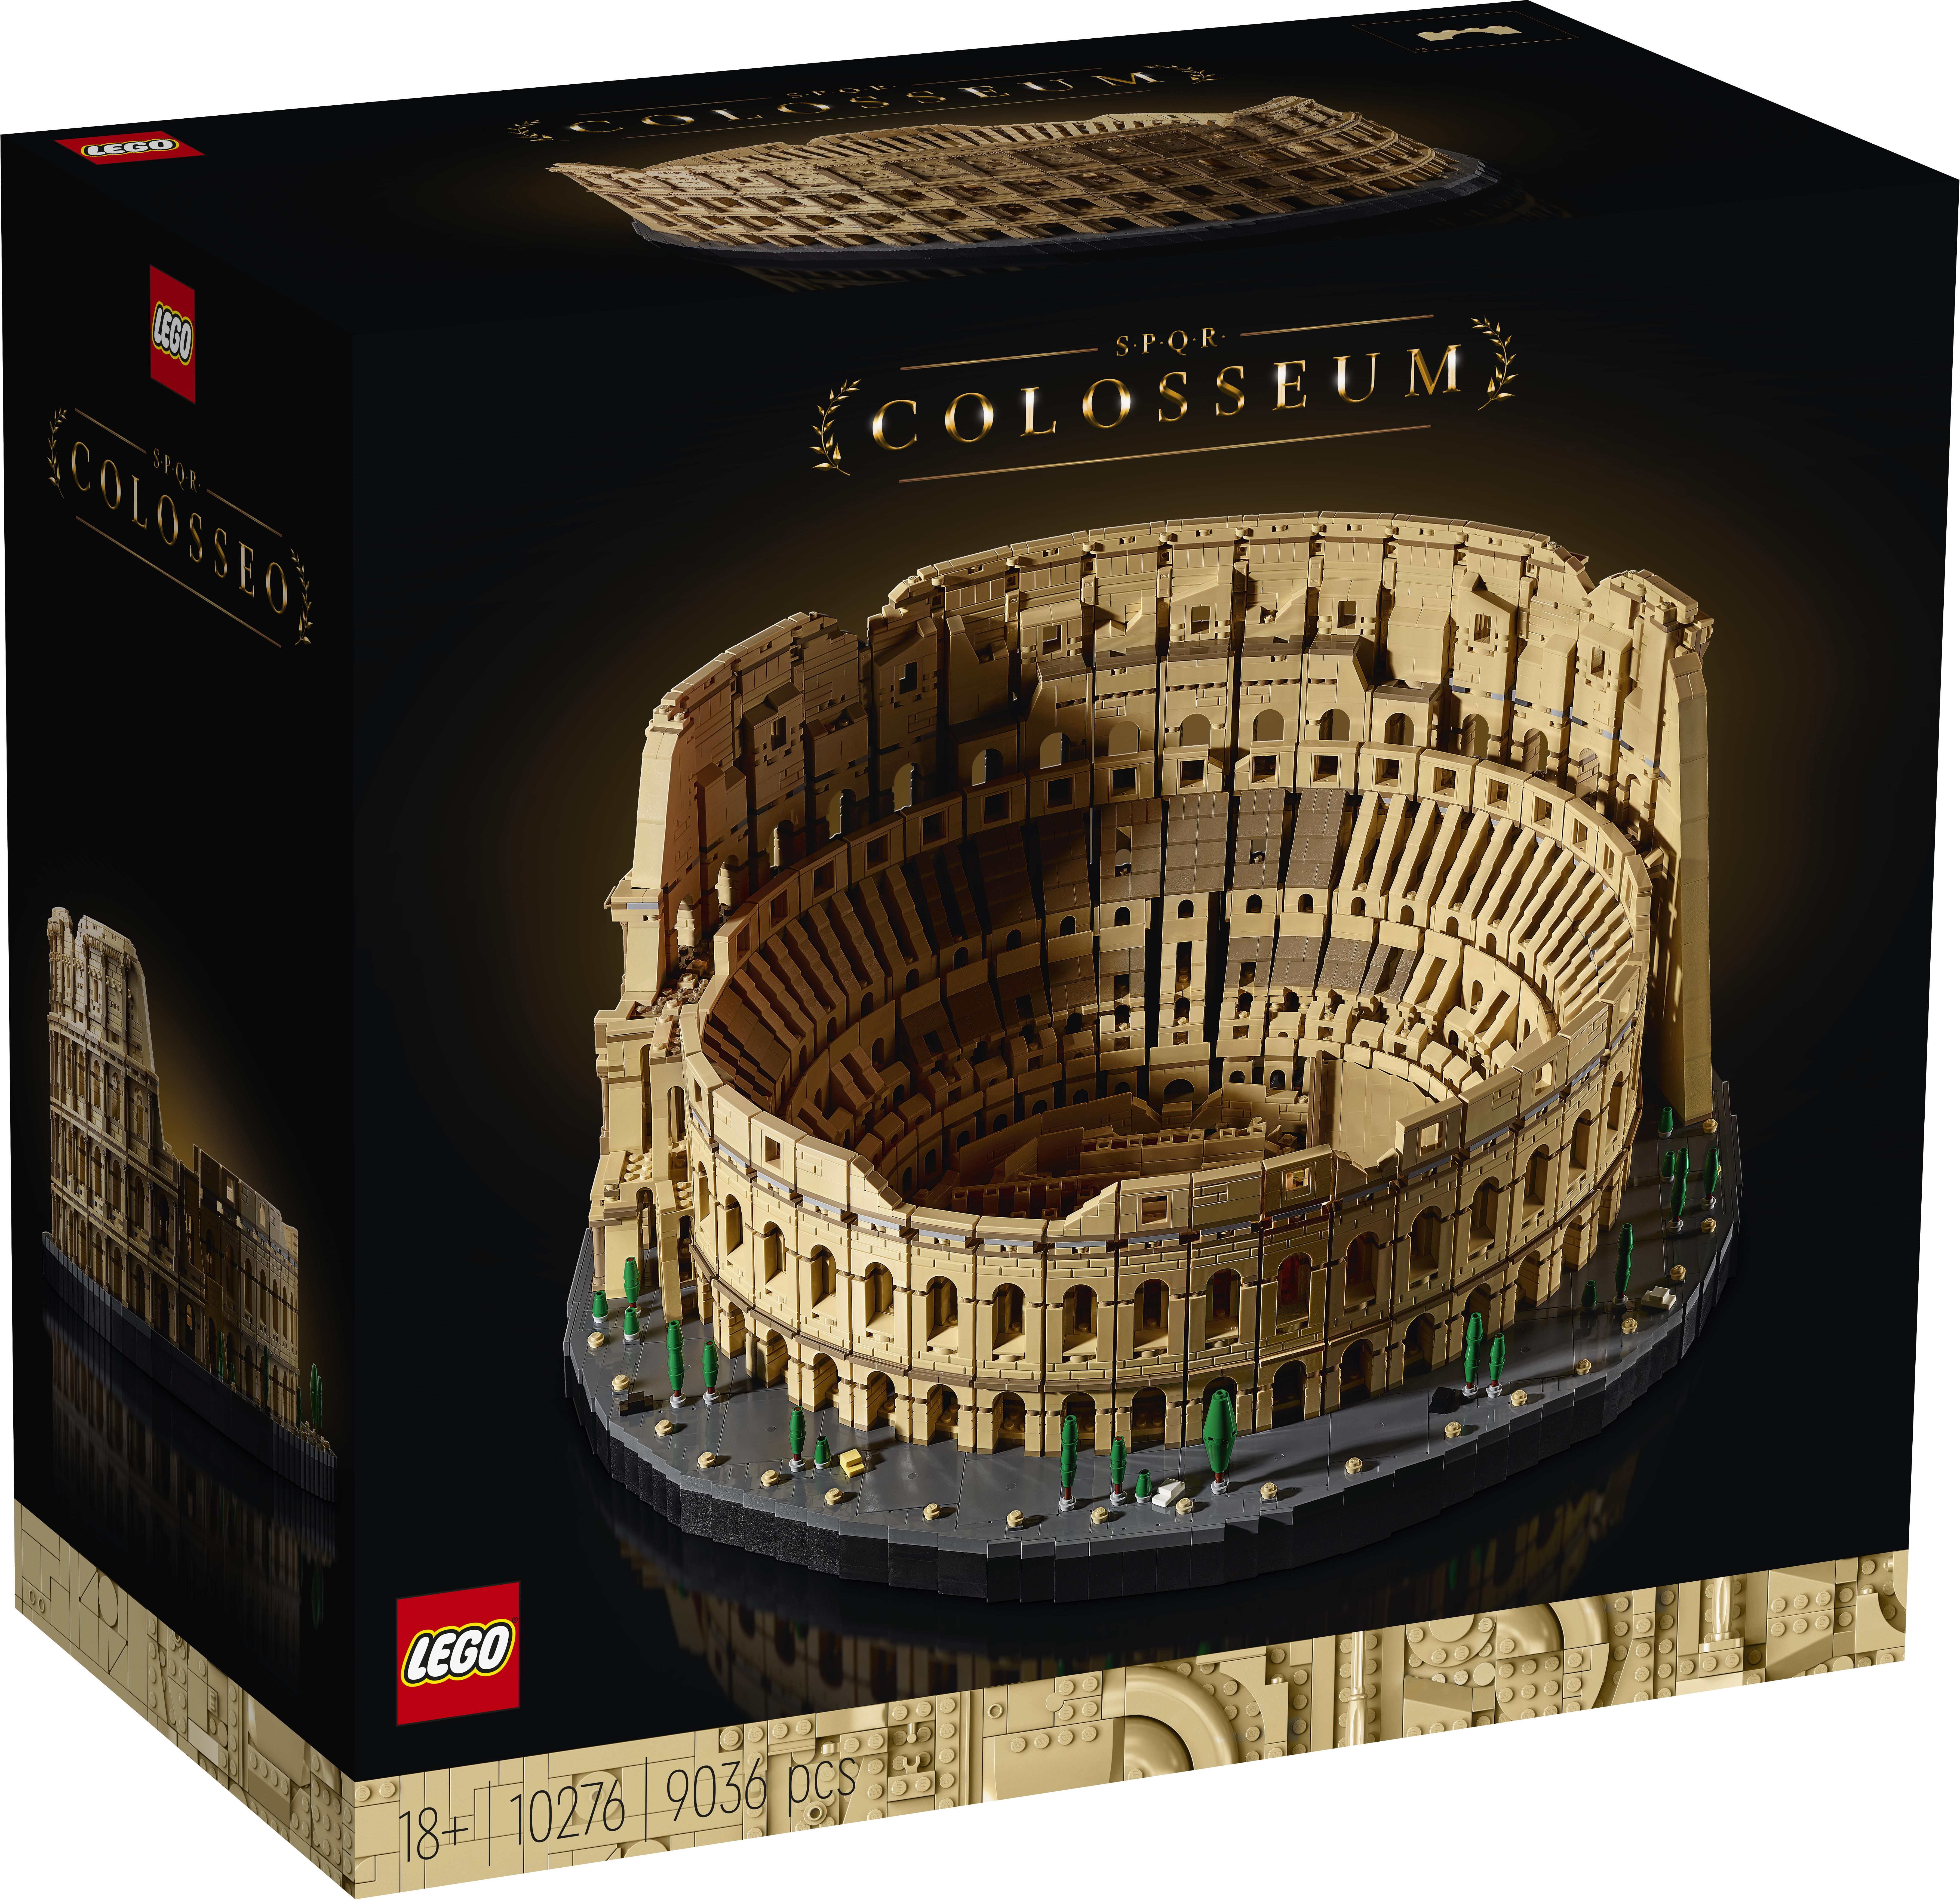 Lego 5 anni - Tutto per i bambini In vendita a Roma